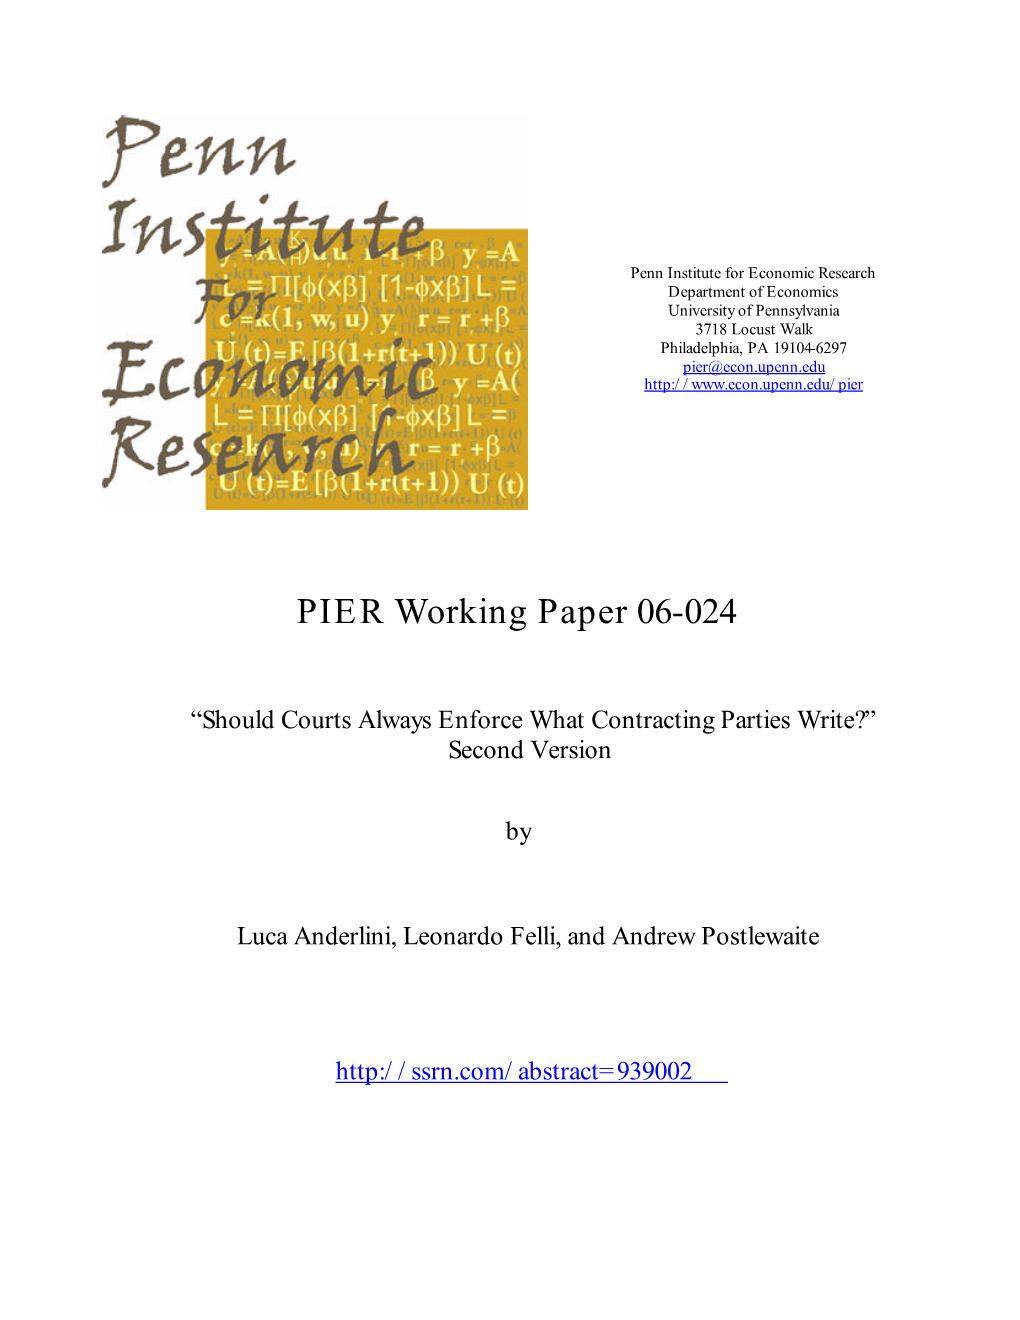 PIER Working Paper 06-024